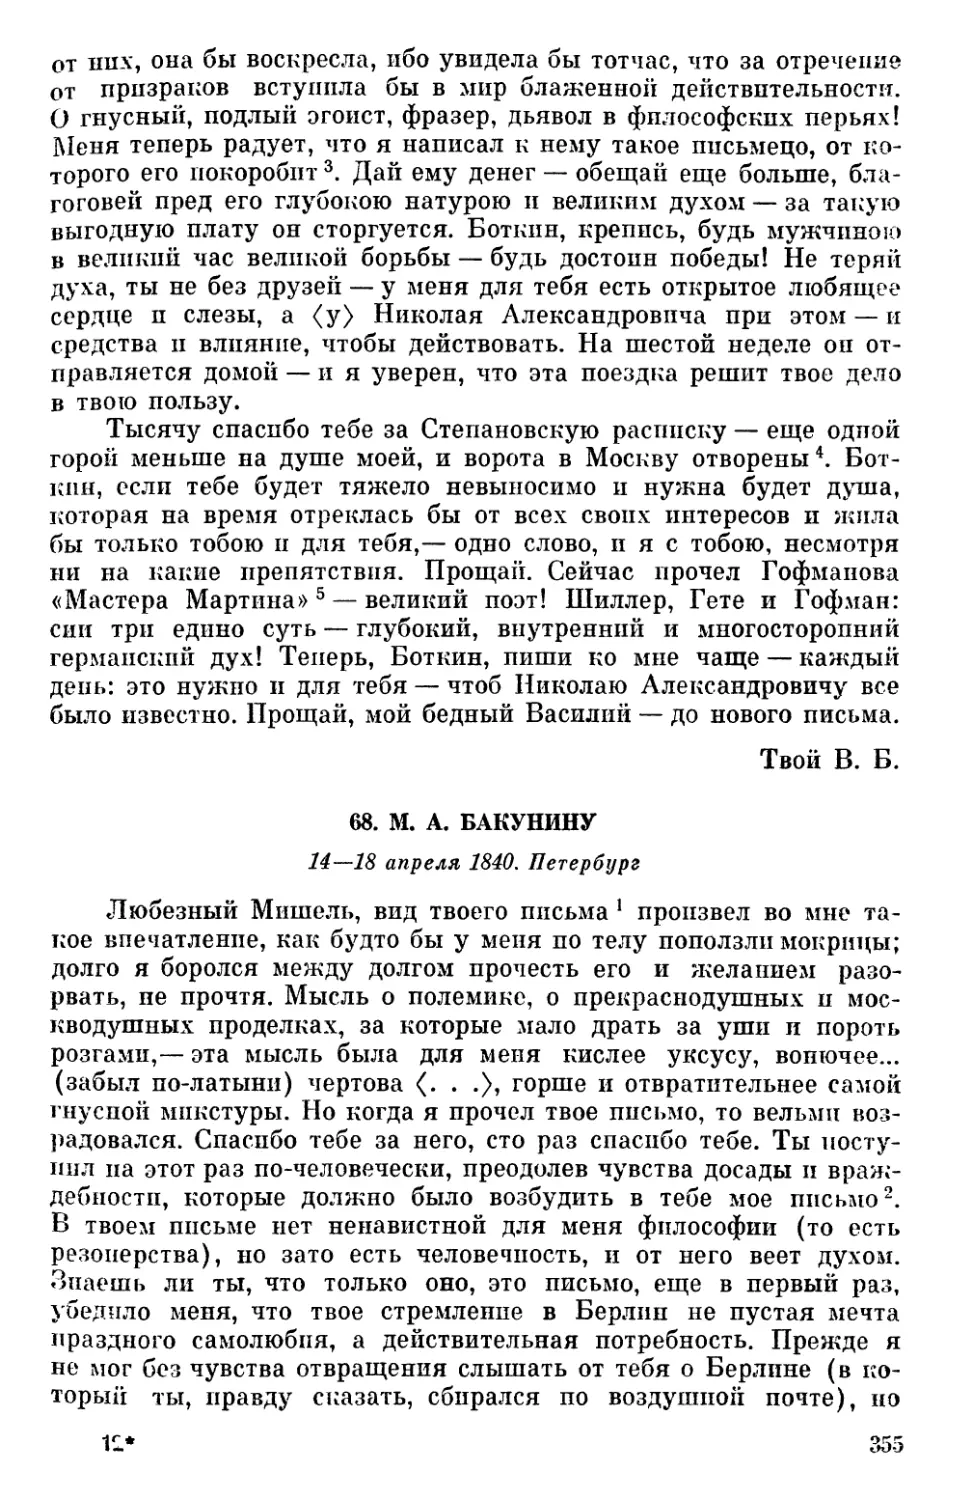 68. М. А. Бакунину. 14—18 апреля 1840